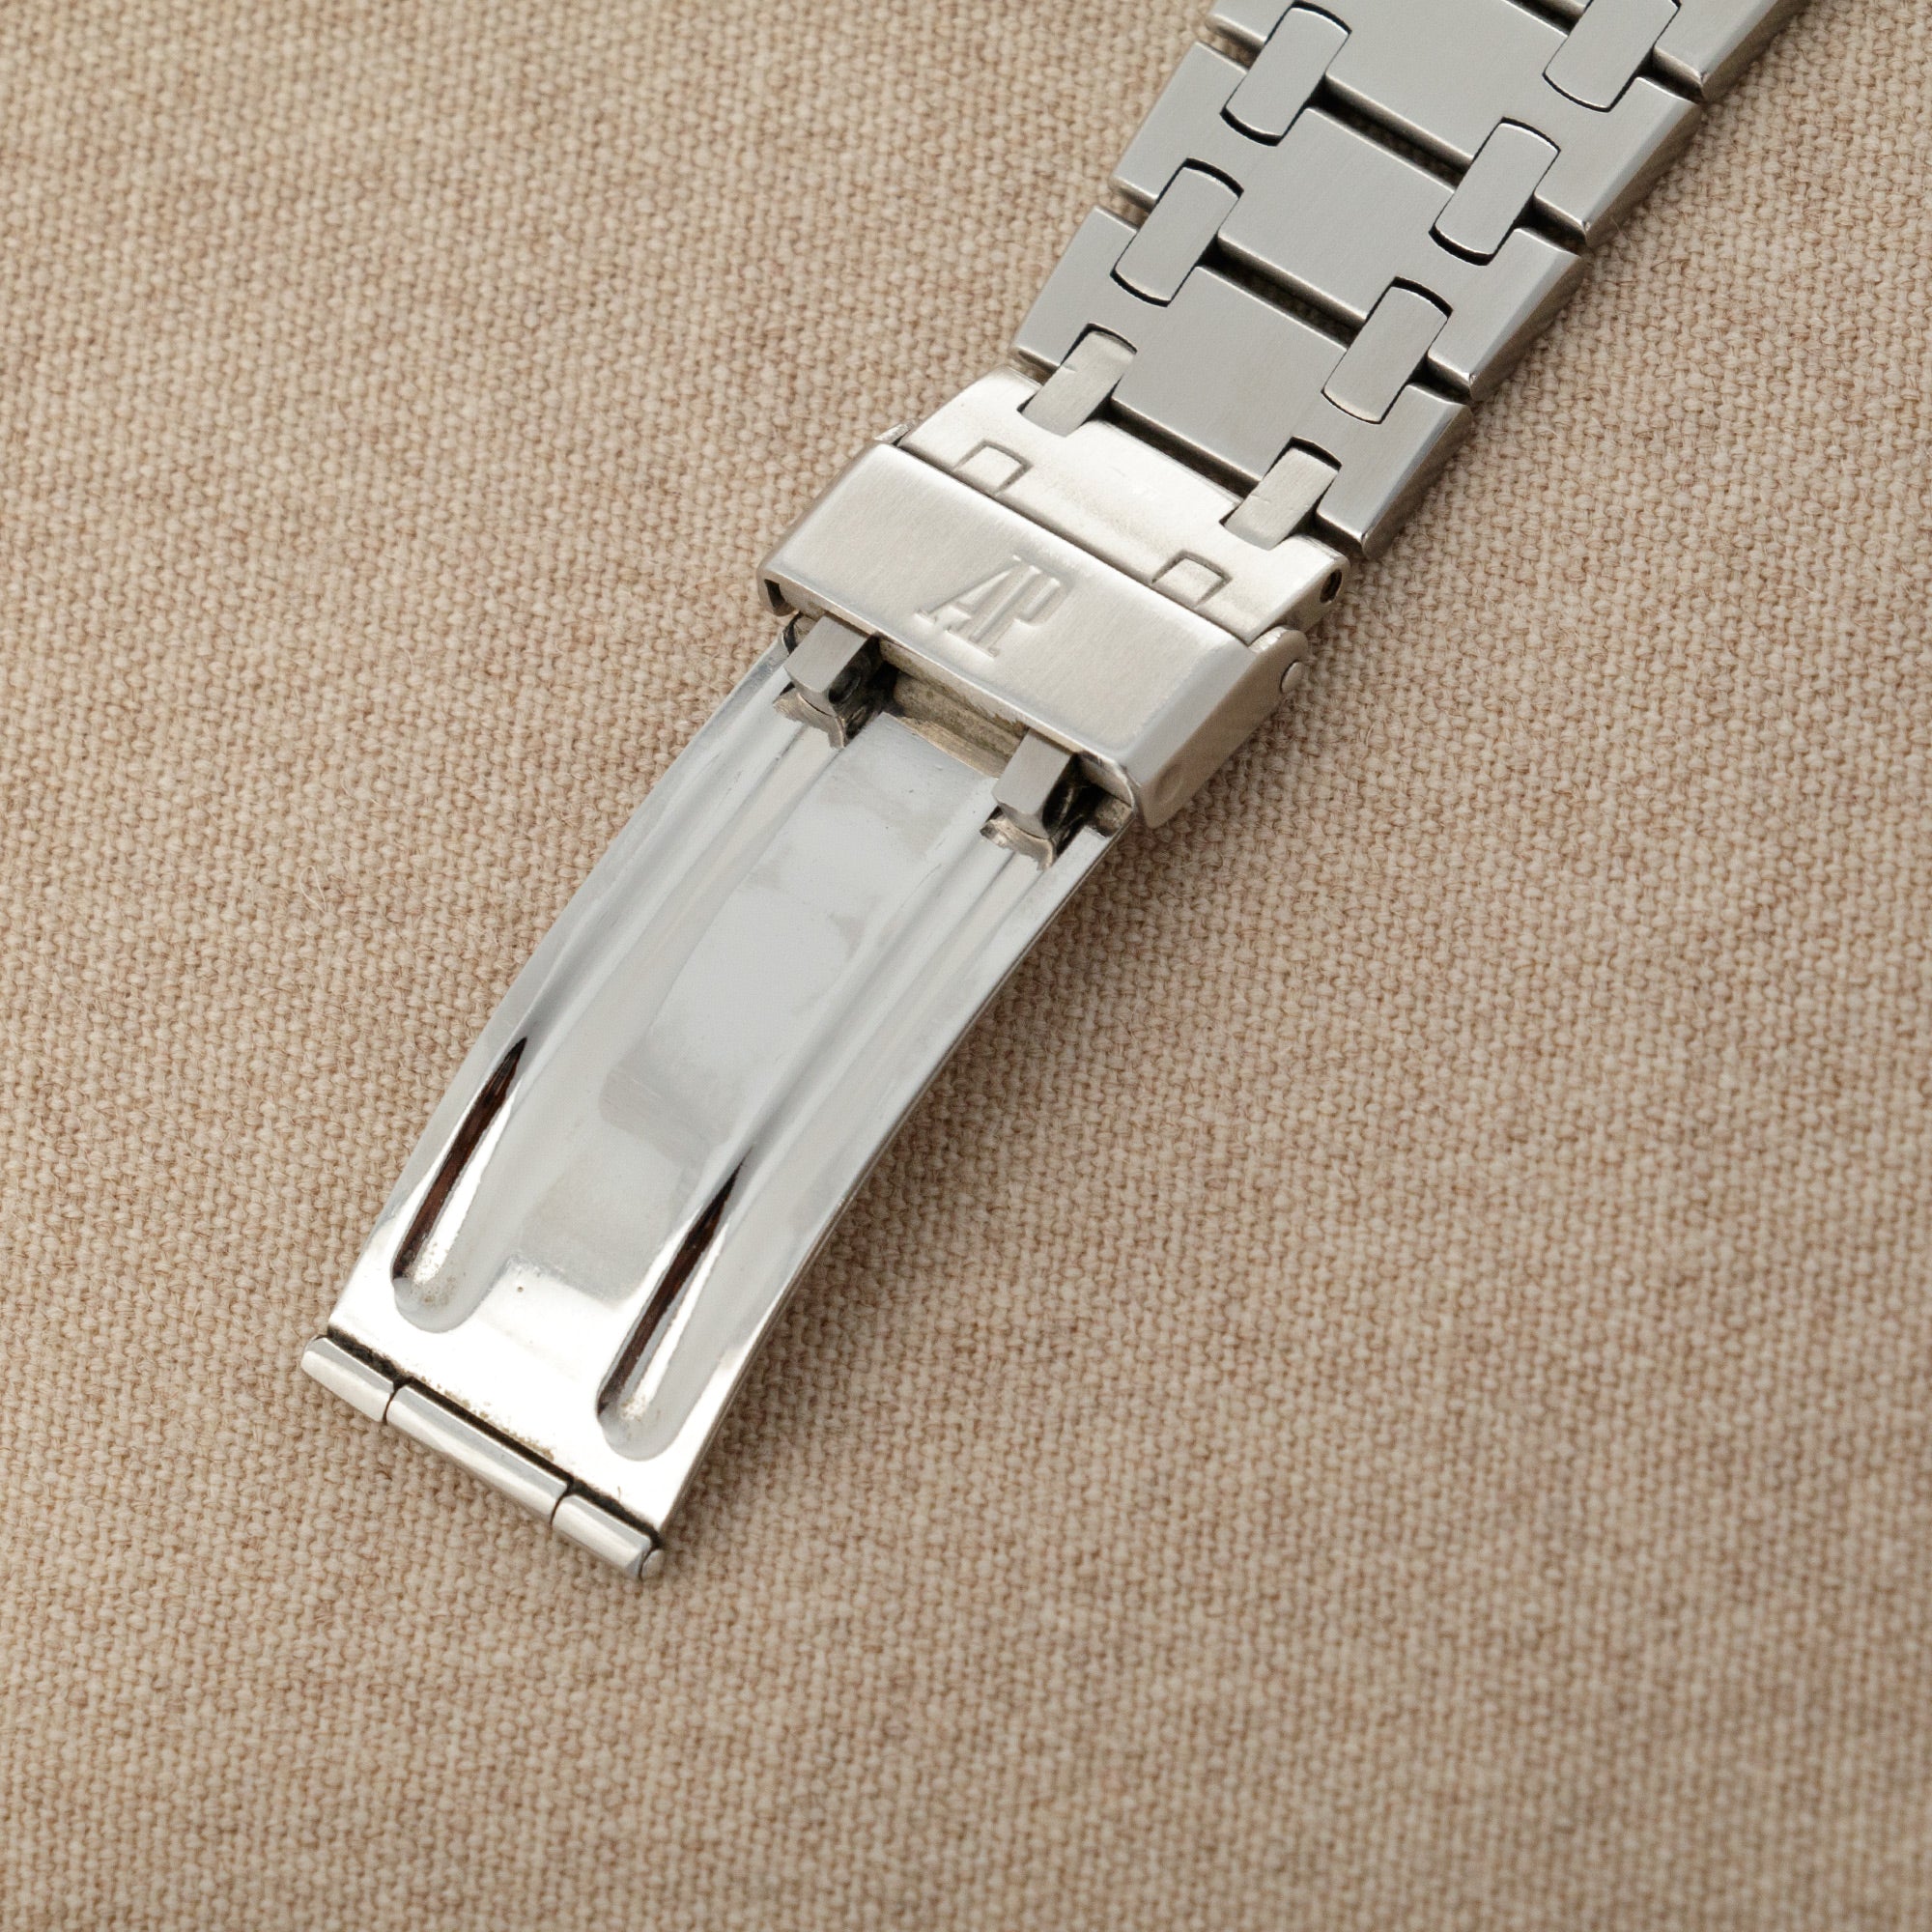 Audemars Piguet - Audemars Piguet Royal Oak C-Series Ref. 5402 - The Keystone Watches